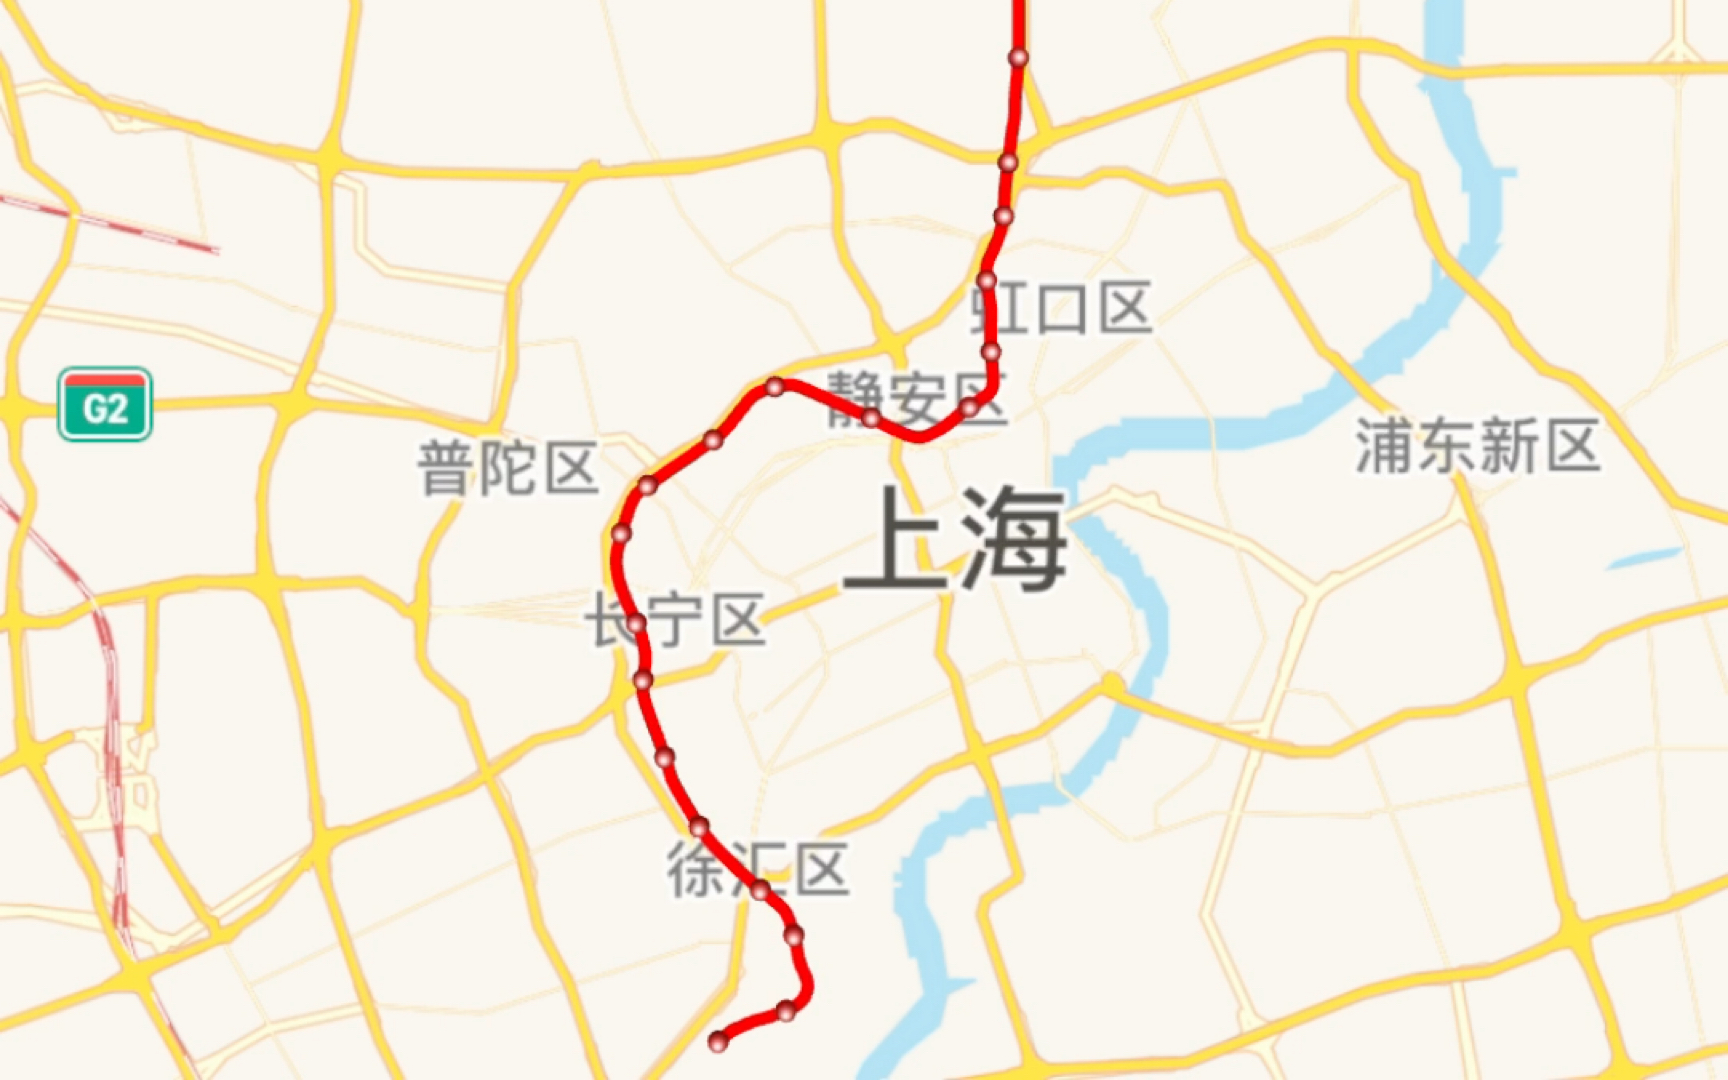 上海地铁3号线路图图片